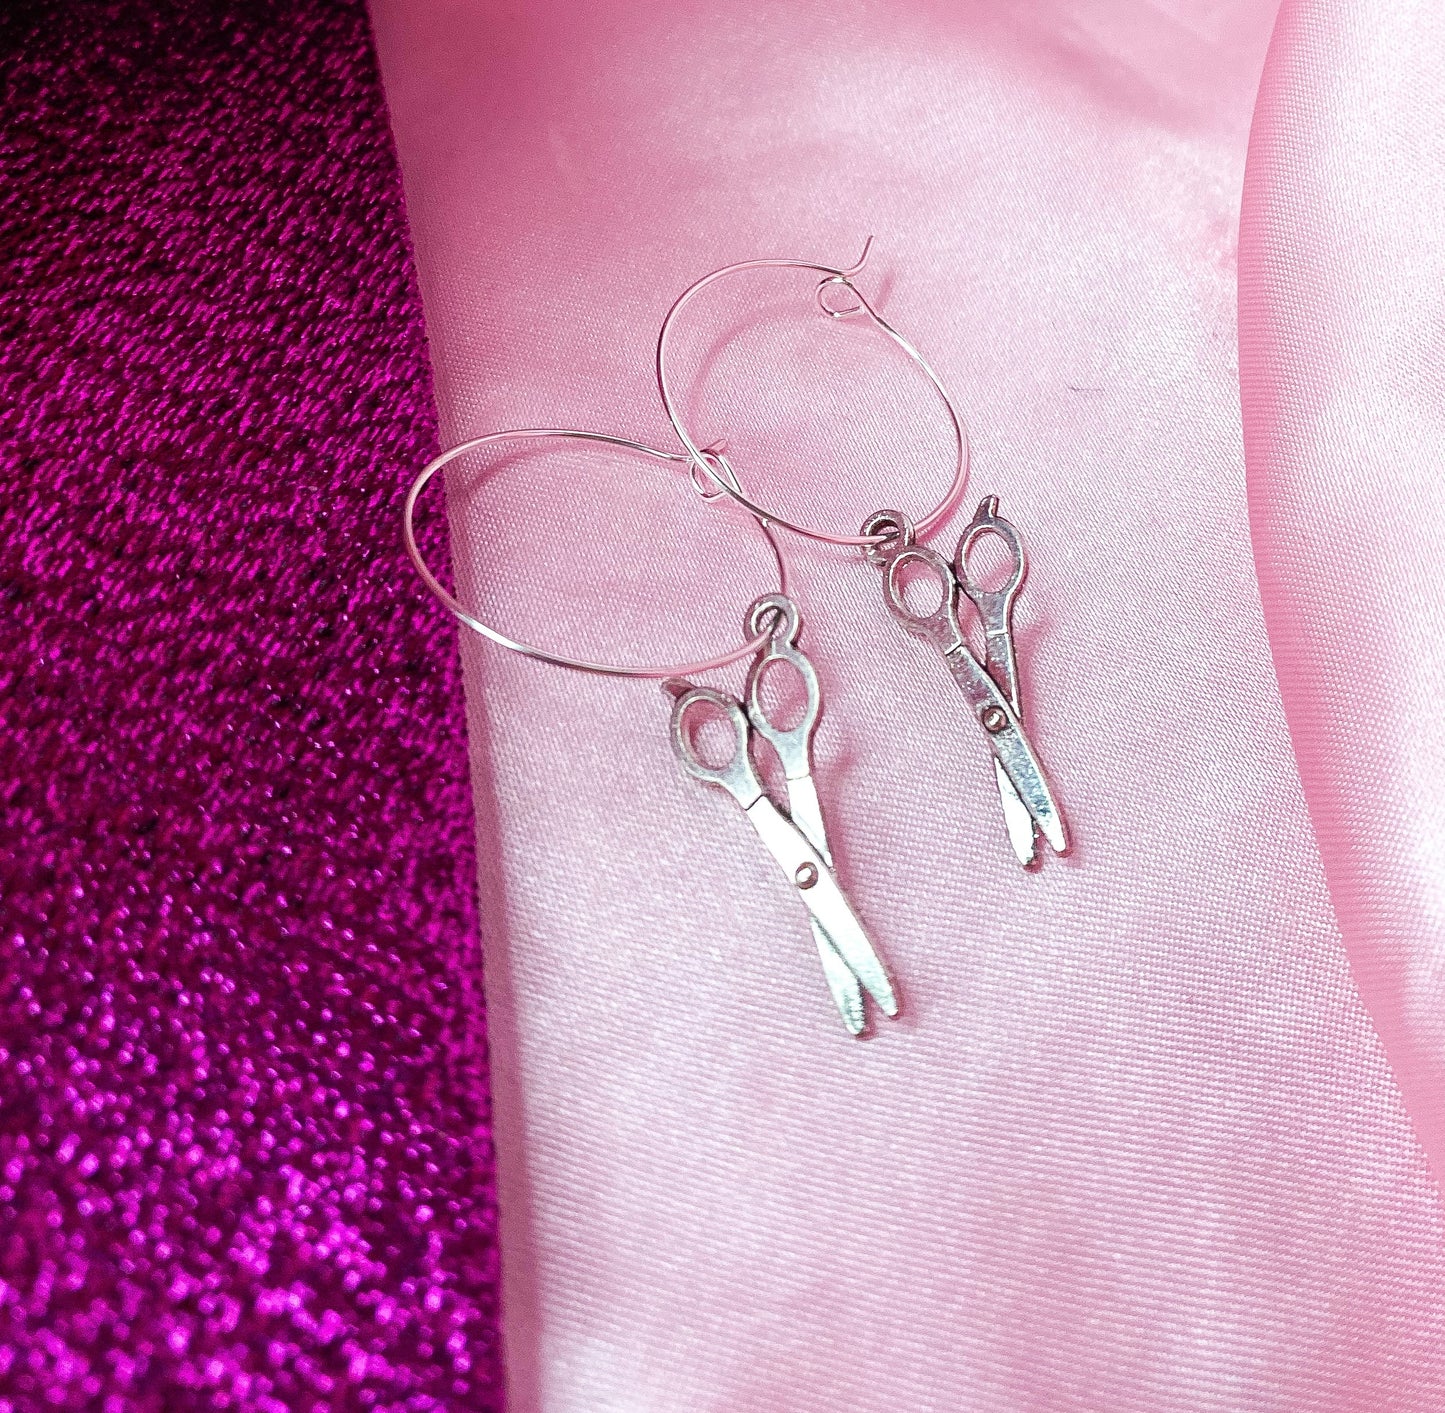 Scissor hoop earrings